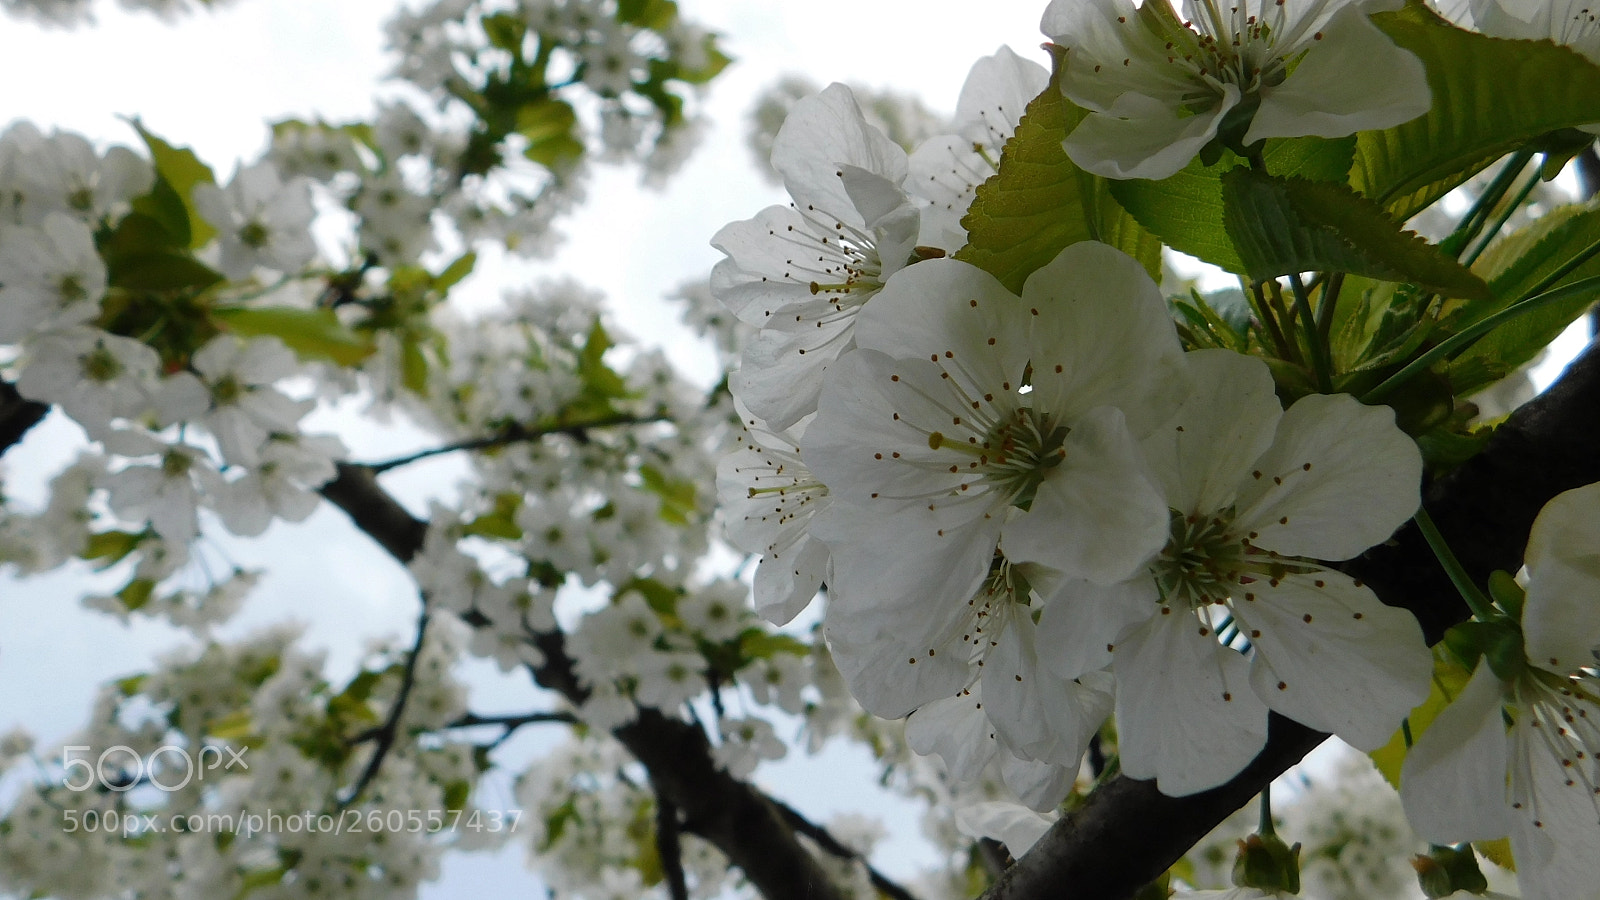 Nikon Coolpix B500 sample photo. Cseresznye virág photography